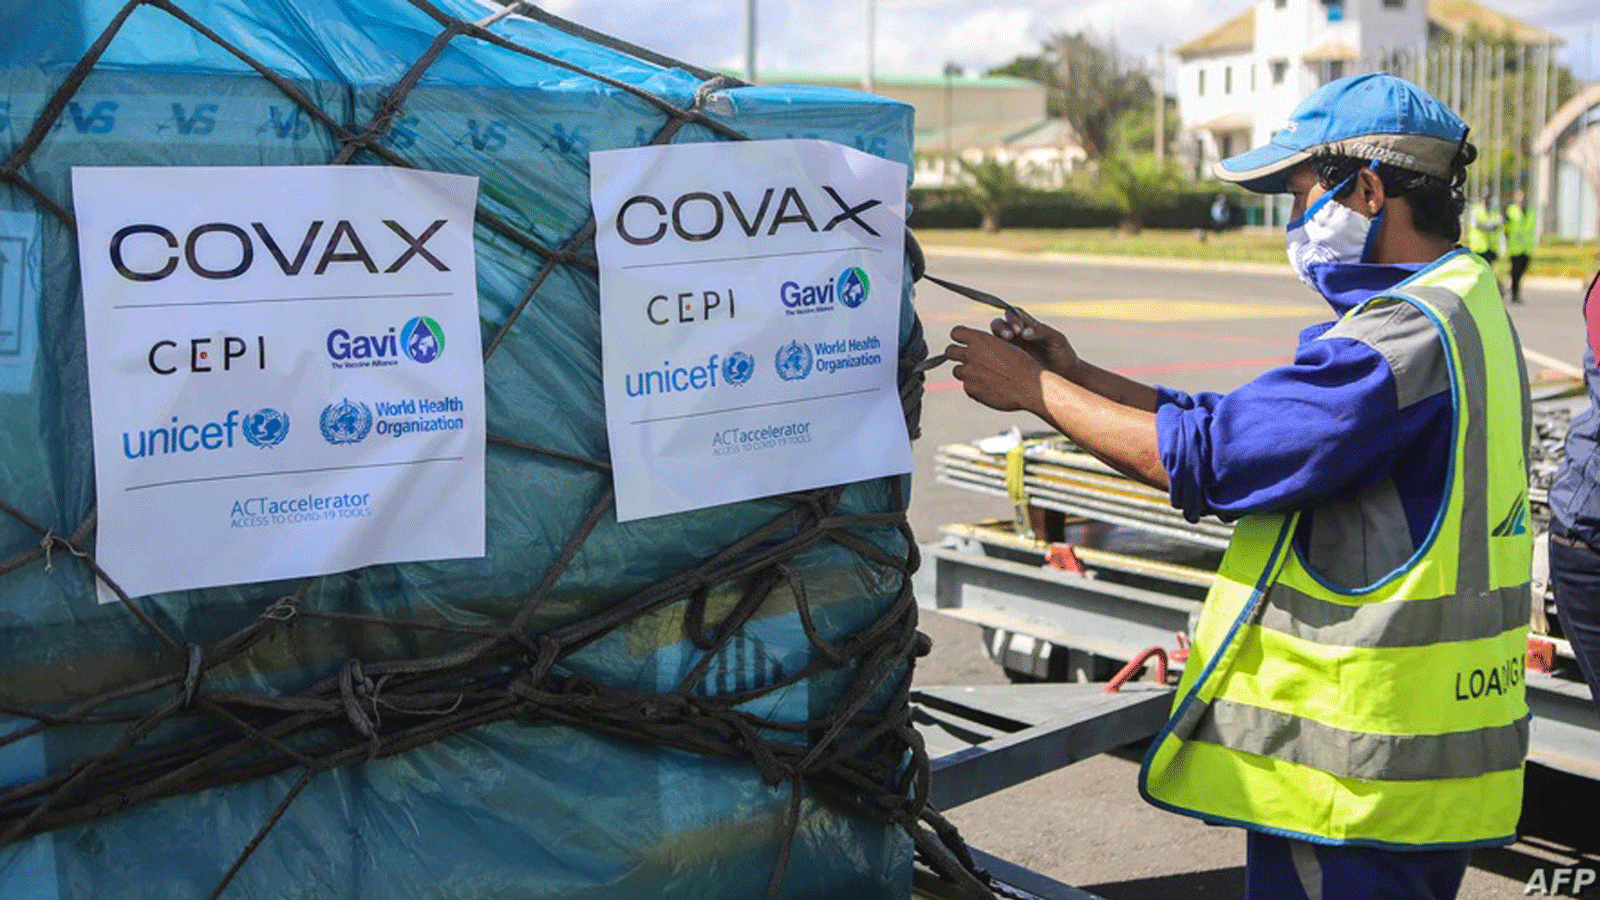 عامل يتعامل مع صناديق لقاحات COVID-19، تم تسليمها كجزء من برنامج توزيع لقاحات COVAX العادل، في مطار إيفاتو الدولي، في أنتاناناريفو، مدغشقر، 8 أيار/مايو 2021.